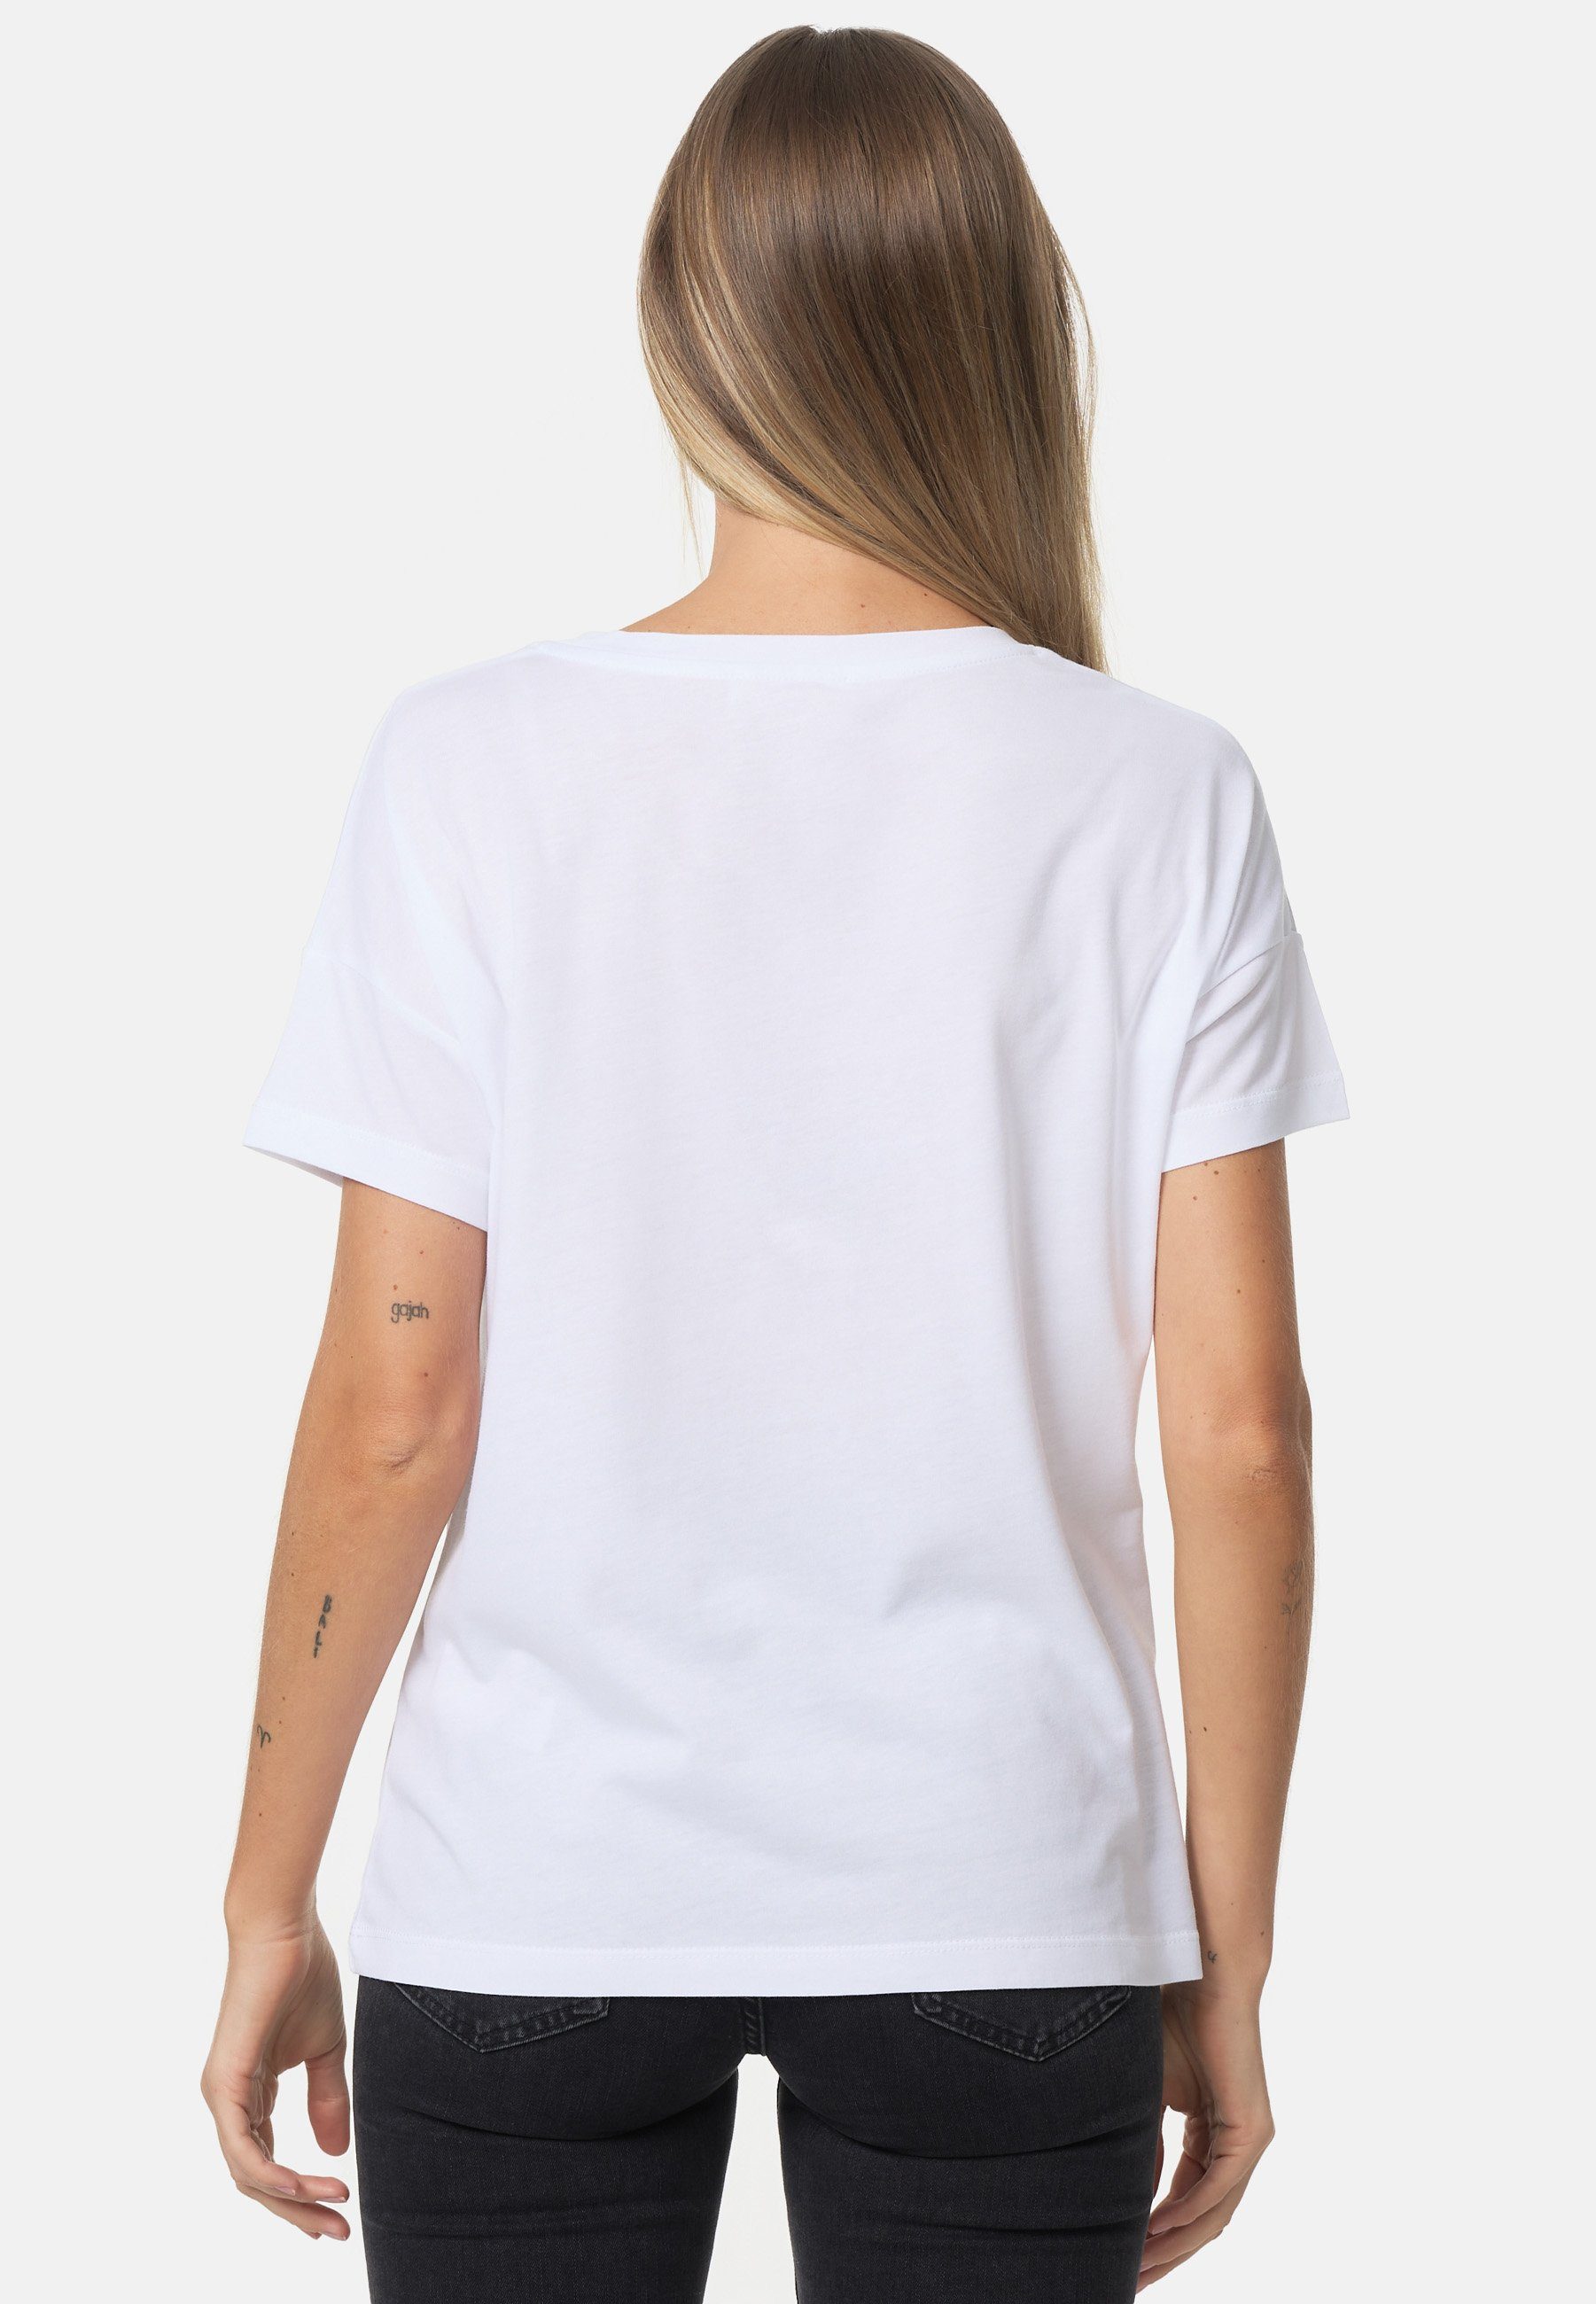 T-Shirt Herz-Print schönem weiß-mehrfarbig mit Decay